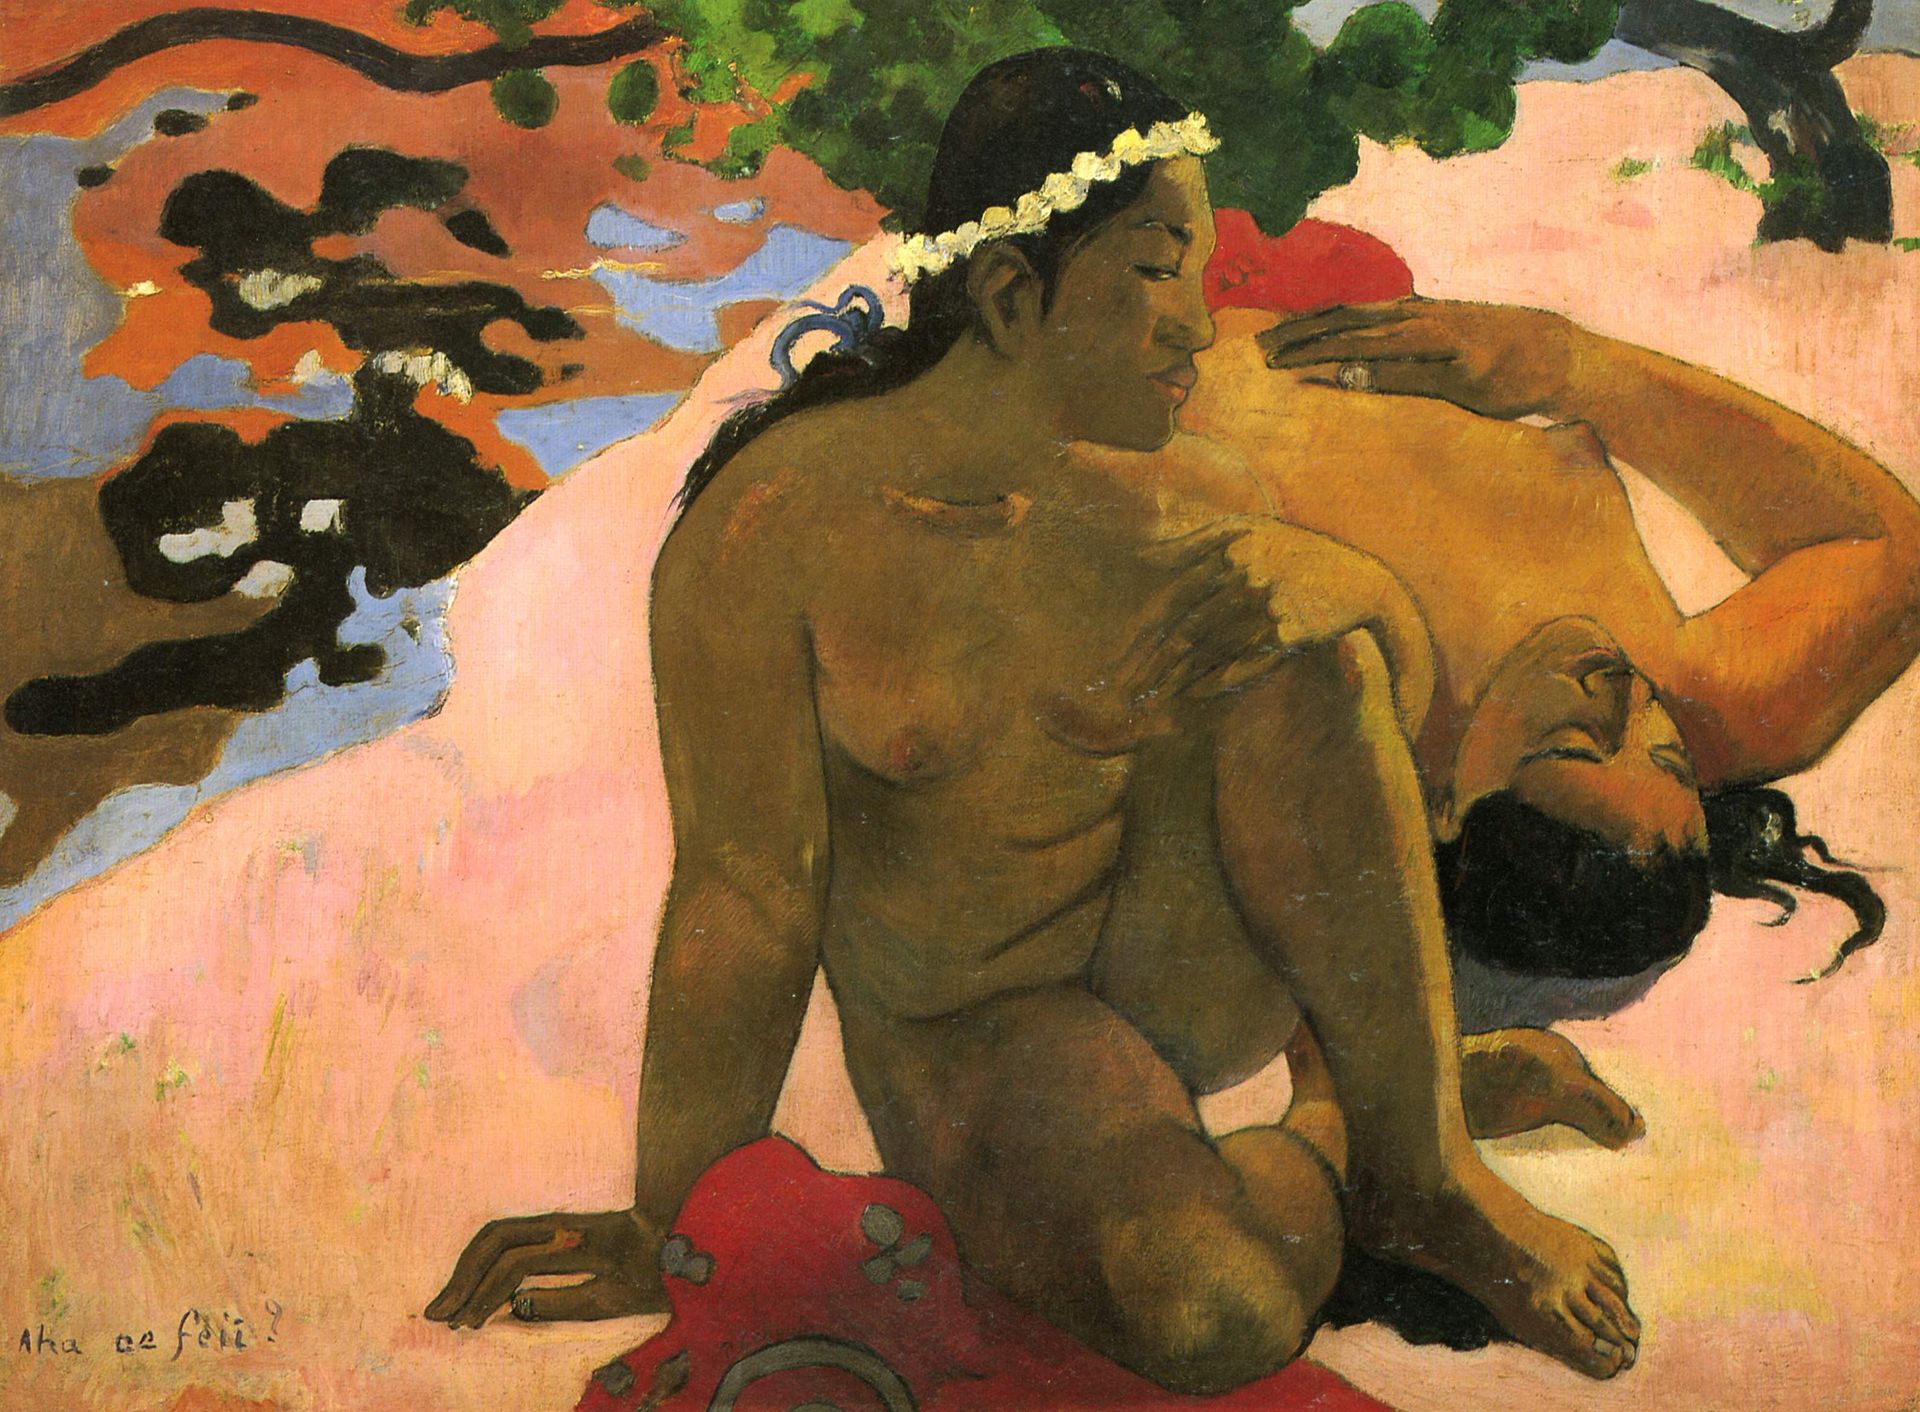 Aha oe feii? (1892) by Paul Gauguin